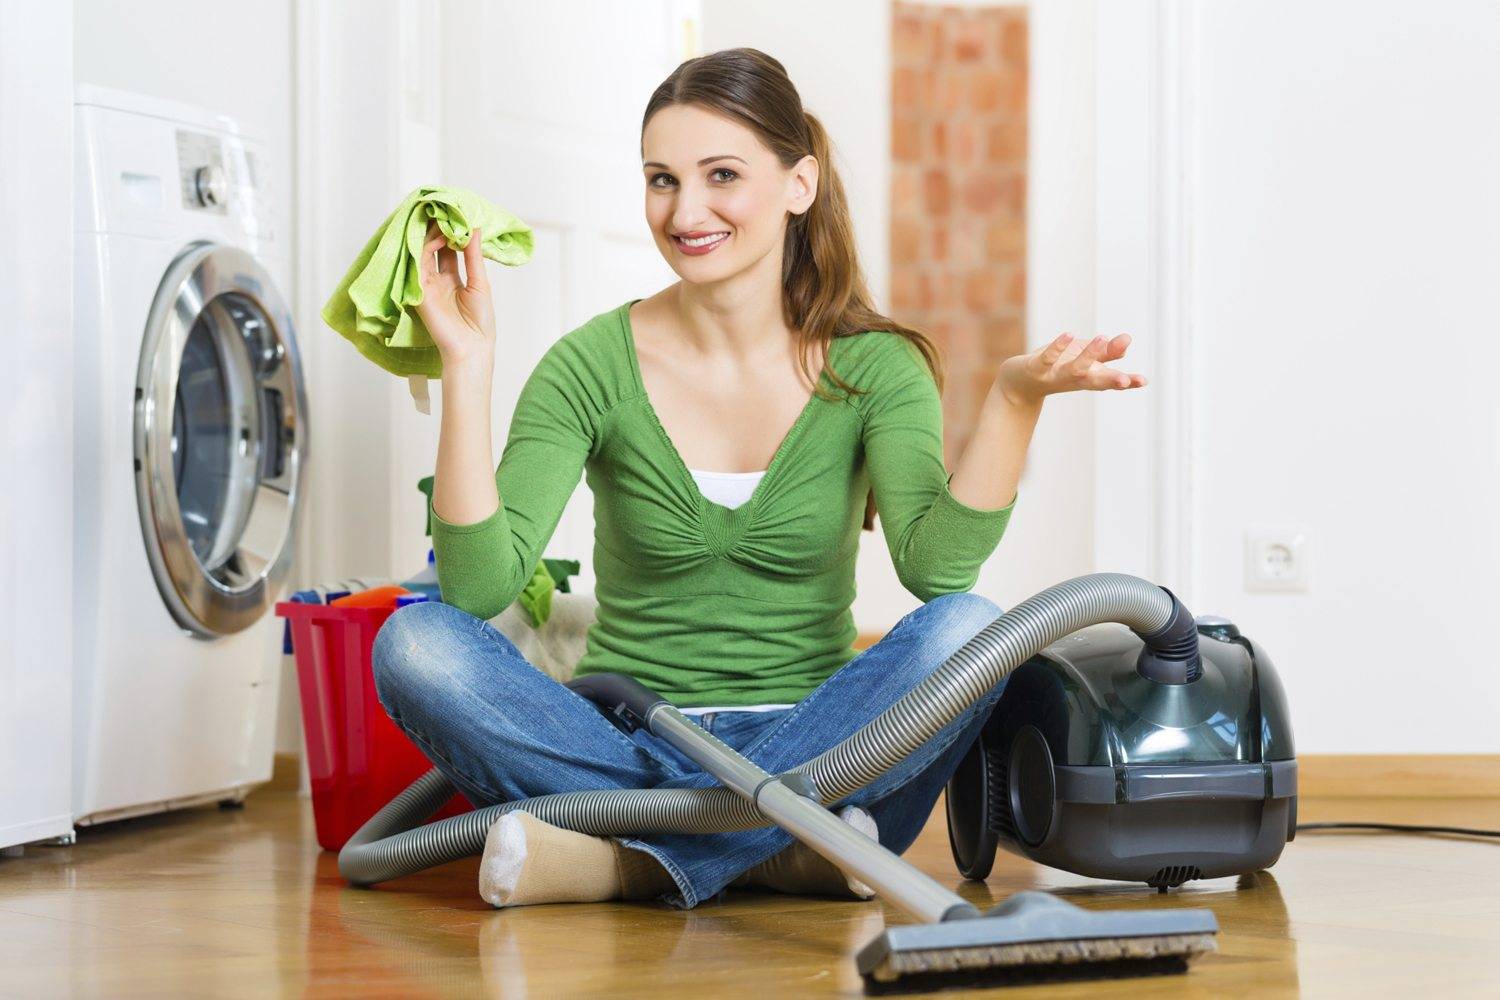 Как быстро убрать в комнате и заставить себя убраться дома, используя полезные советы домохозяек и лайфхаки для качественной уборки квартиры